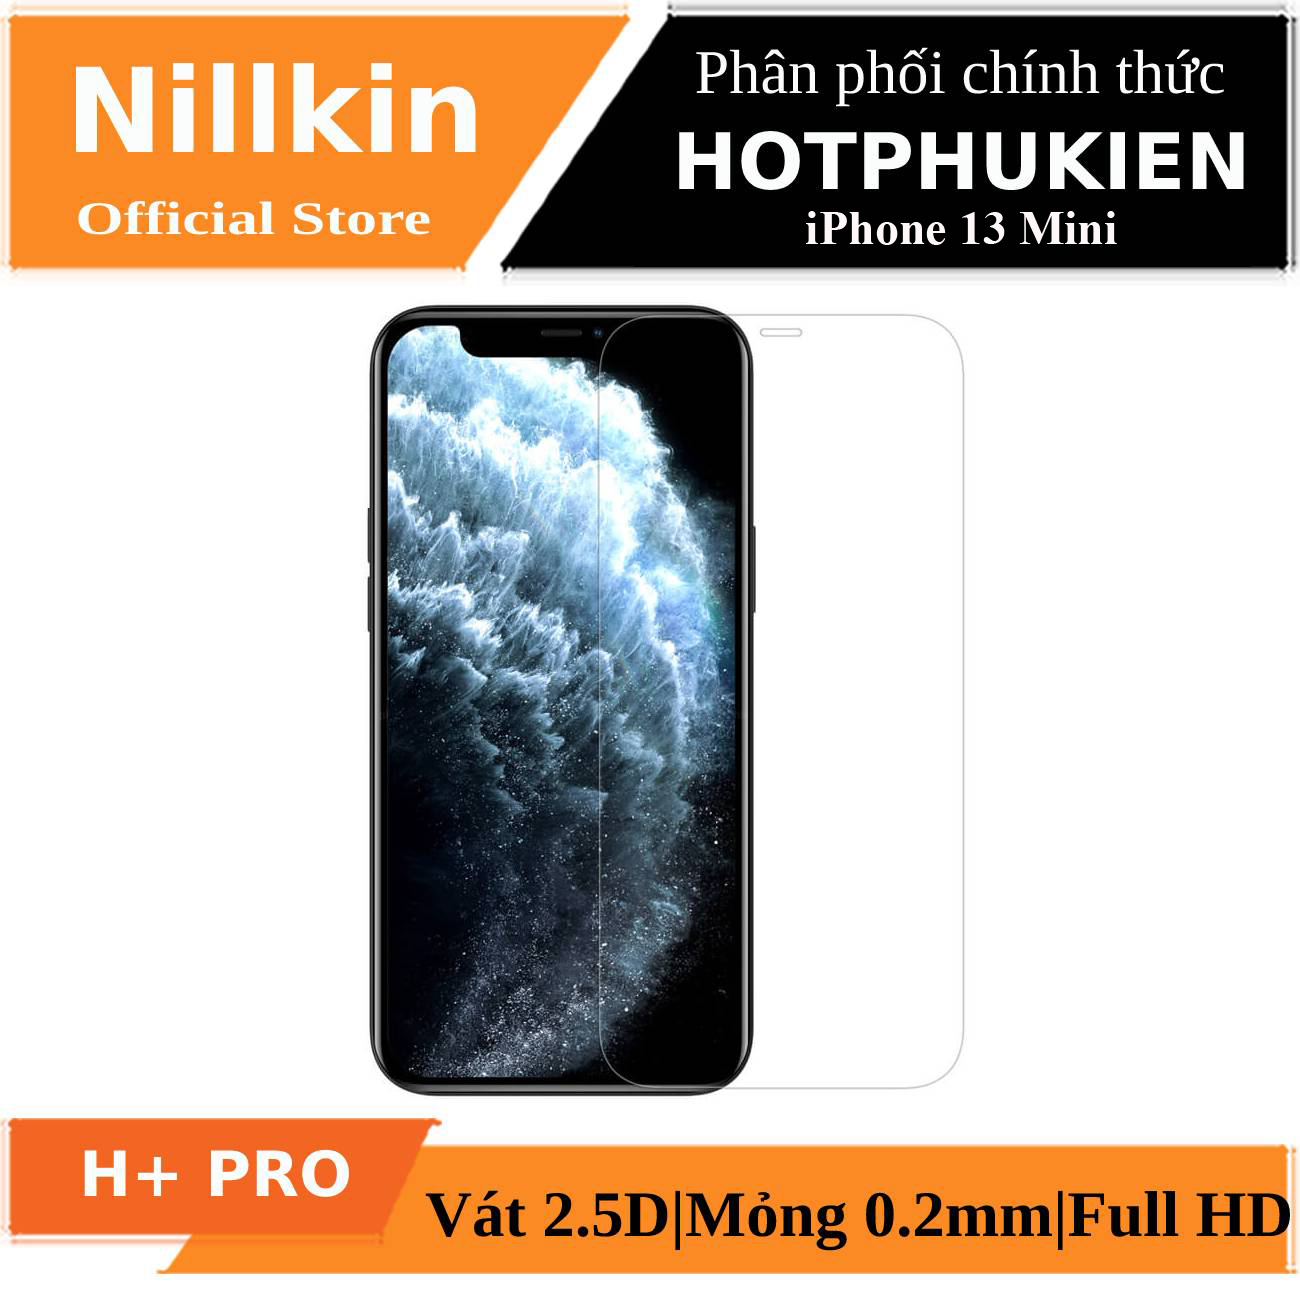 Miếng dán kính cường lực iPhone 13 Mini hiệu Nillkin Amazing H+ Pro